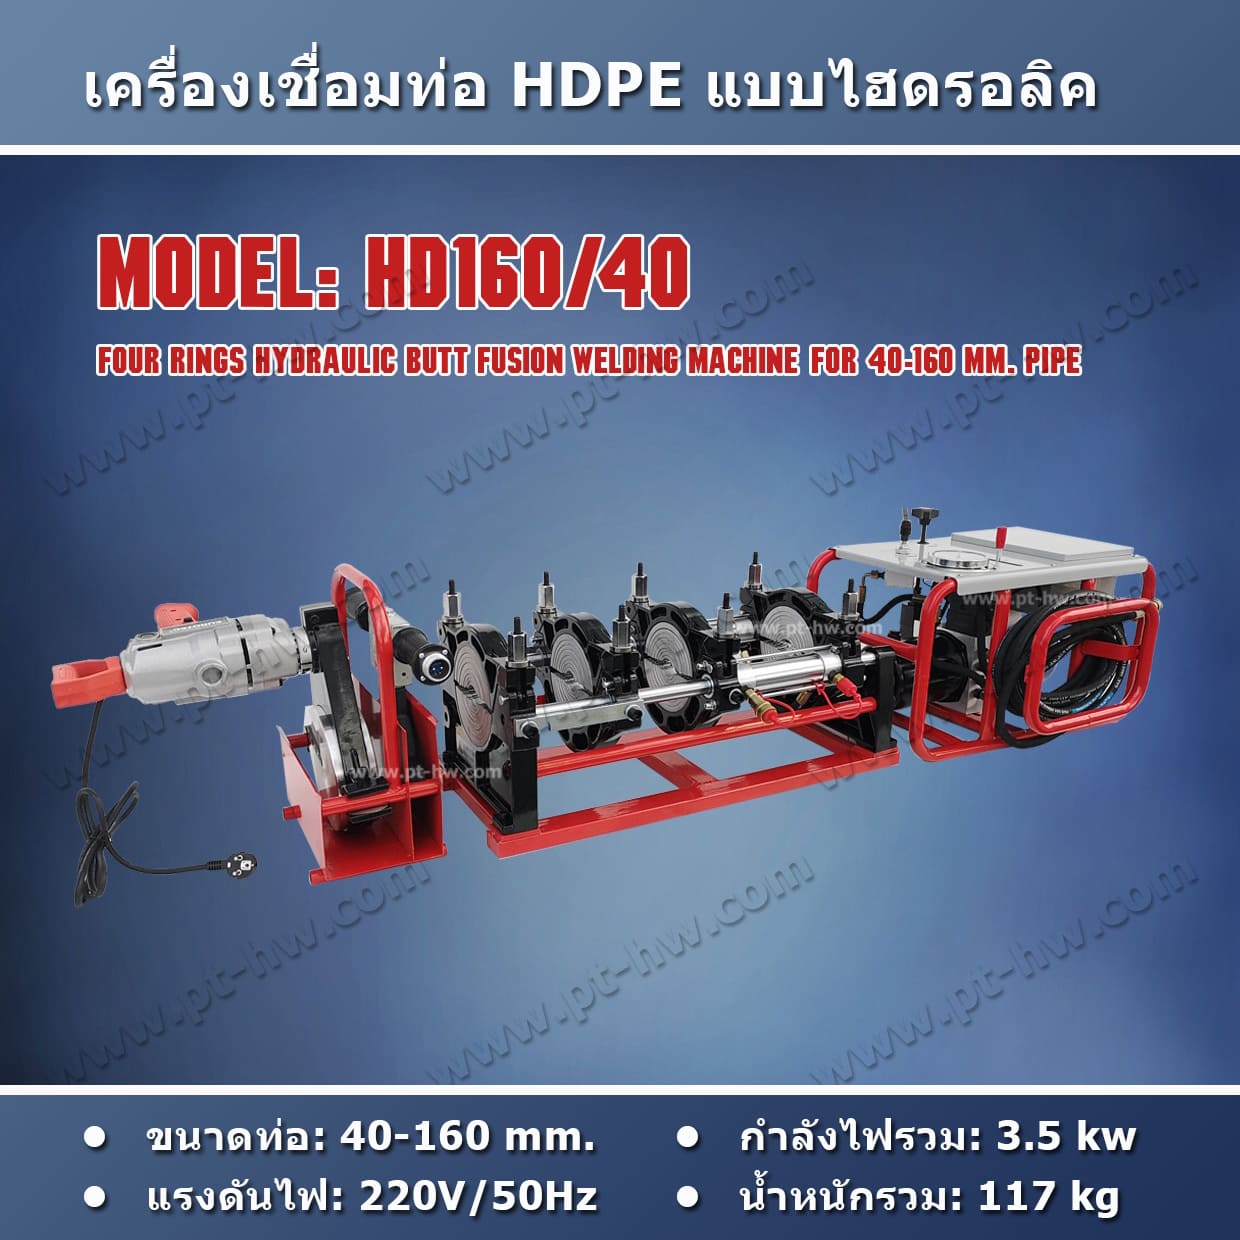 เครื่องเชื่อมท่อ HDPE 160 mm. รุ่น HD160/40